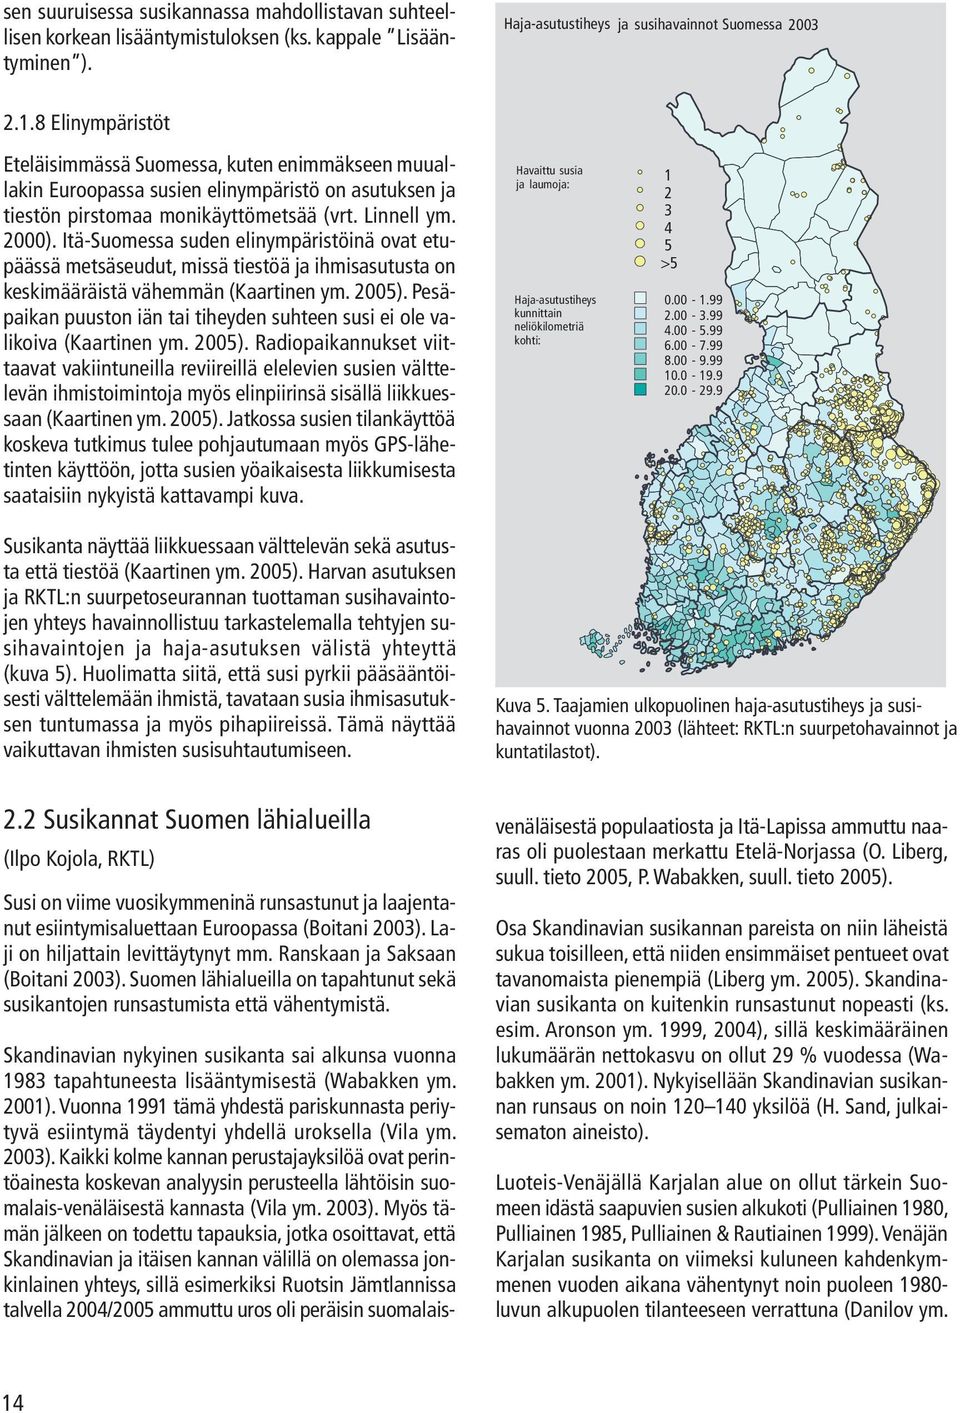 Itä-Suomessa suden elinympäristöinä ovat etupäässä metsäseudut, missä tiestöä ja ihmisasutusta on keskimääräistä vähemmän (Kaartinen ym. 2005).